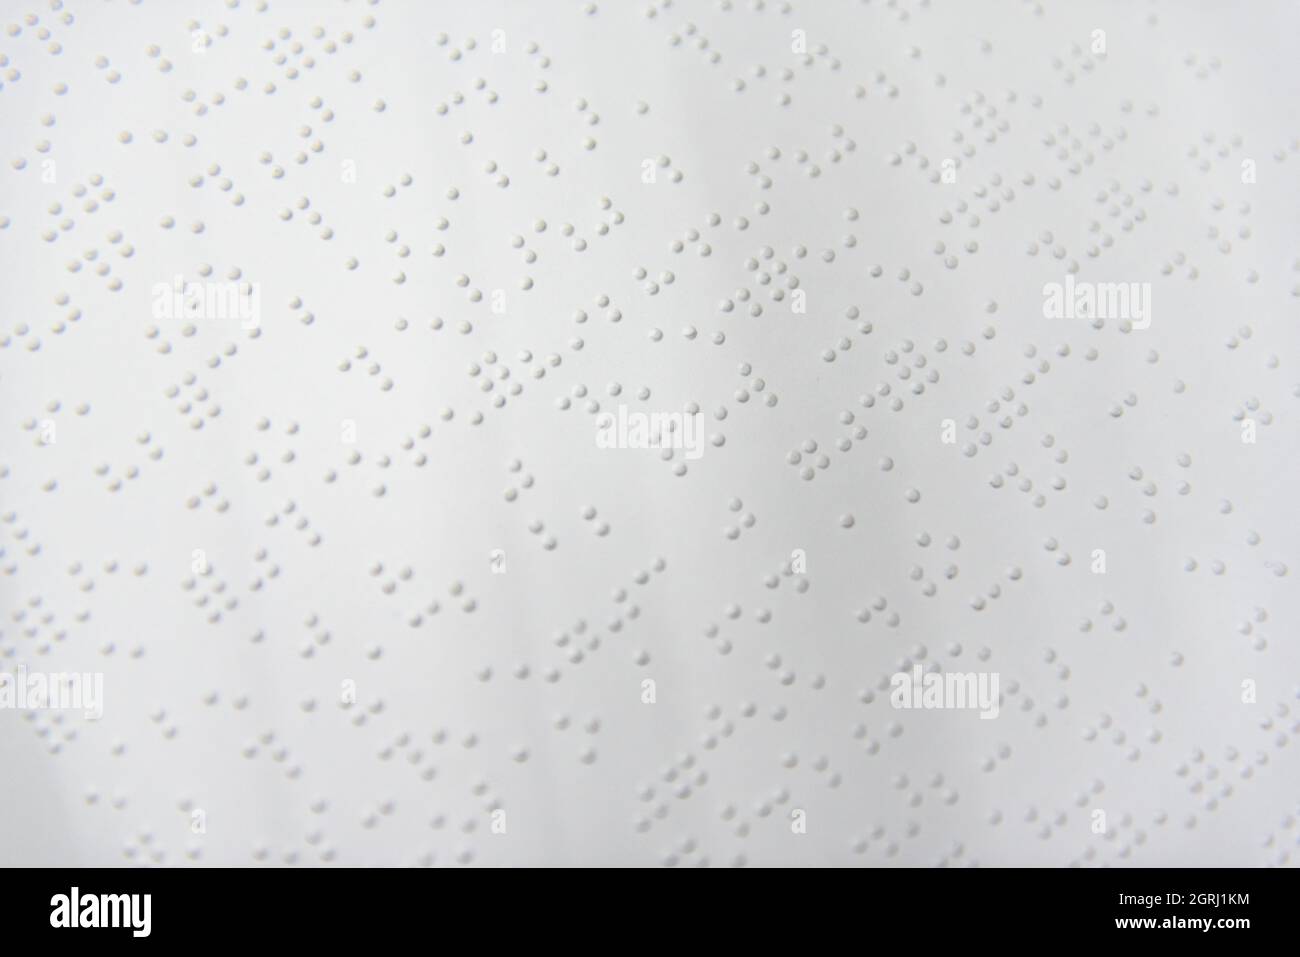 Ein Textfragment in Louis-Braille-Schrift, das mit speziellen Druckgeräten auf ein Standardpapier gedruckt wurde. Stockfoto